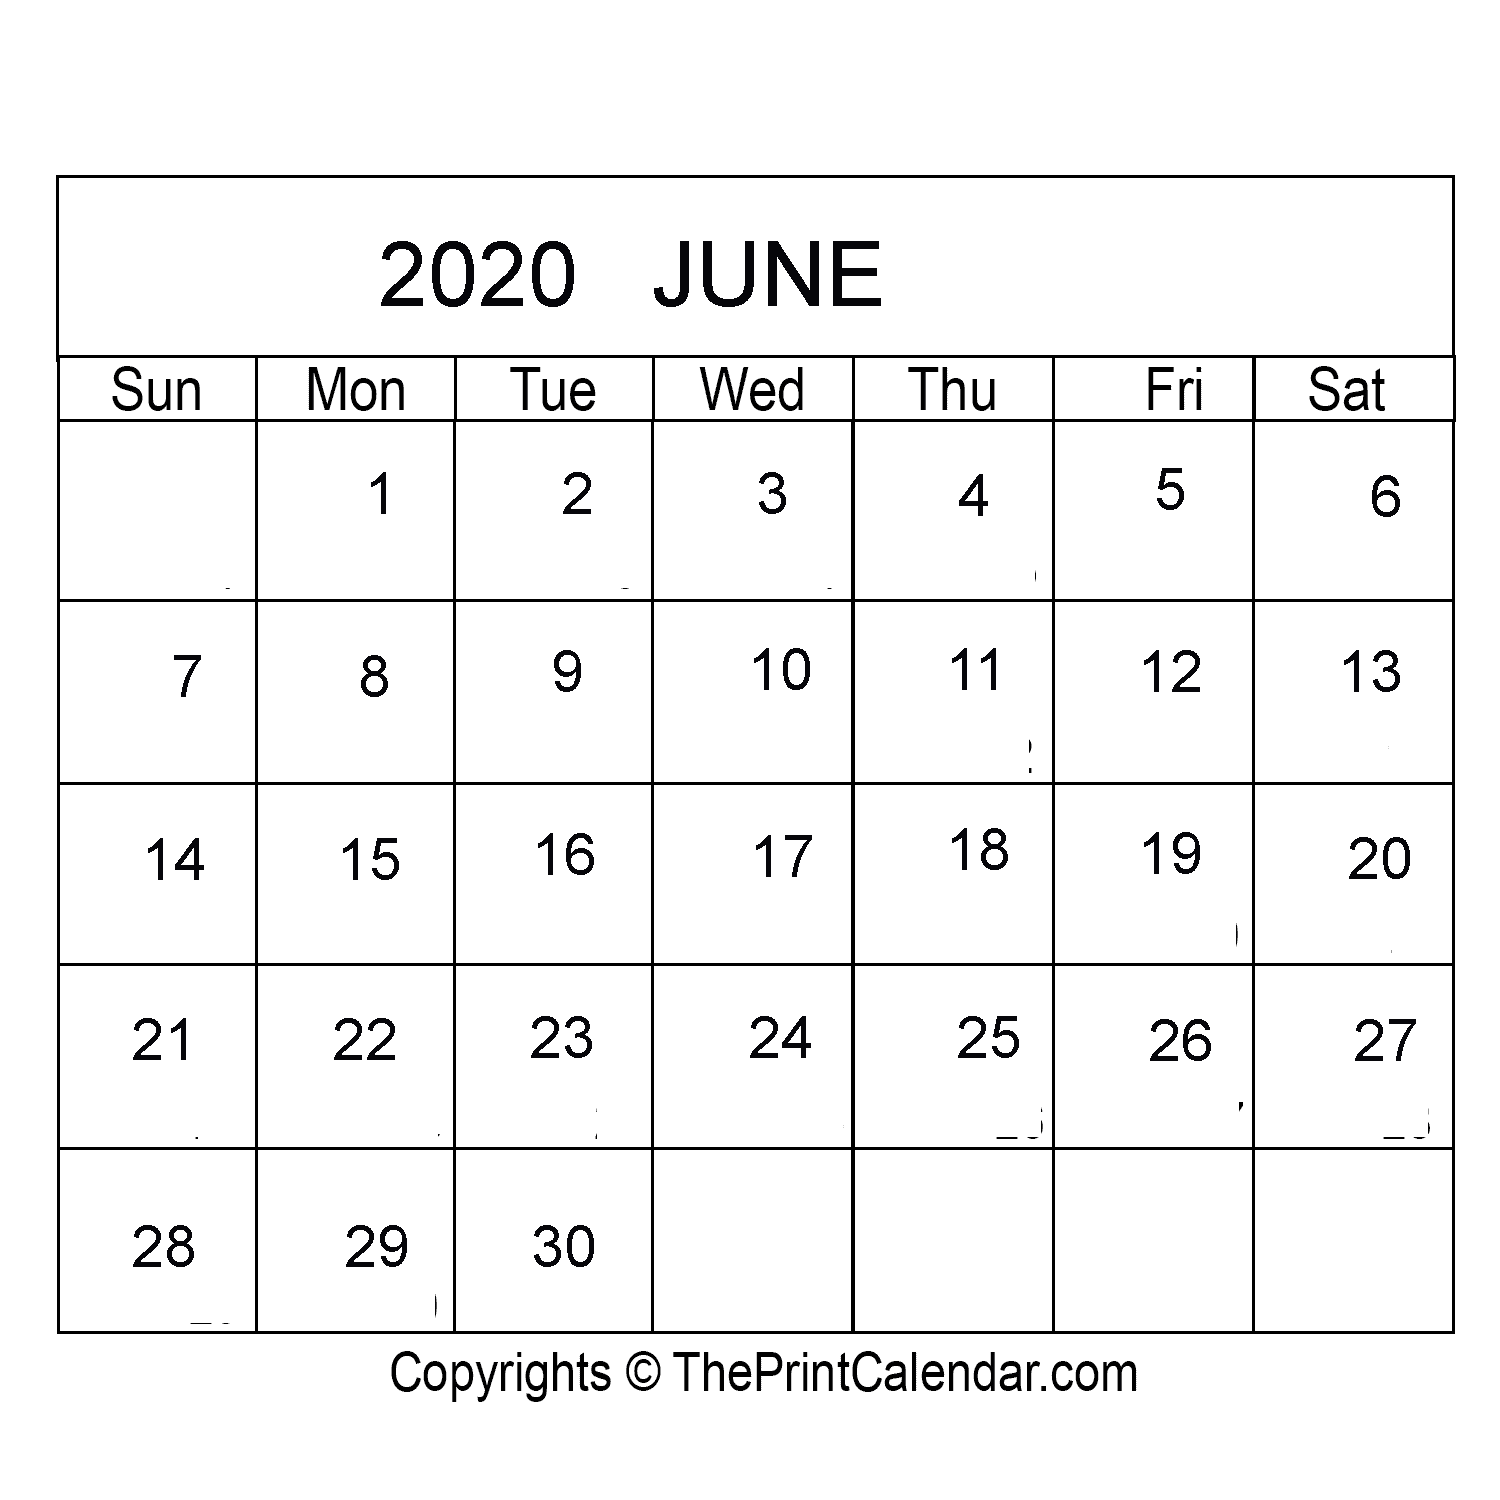 june-2020-printable-calendar-template-pdf-word-excel